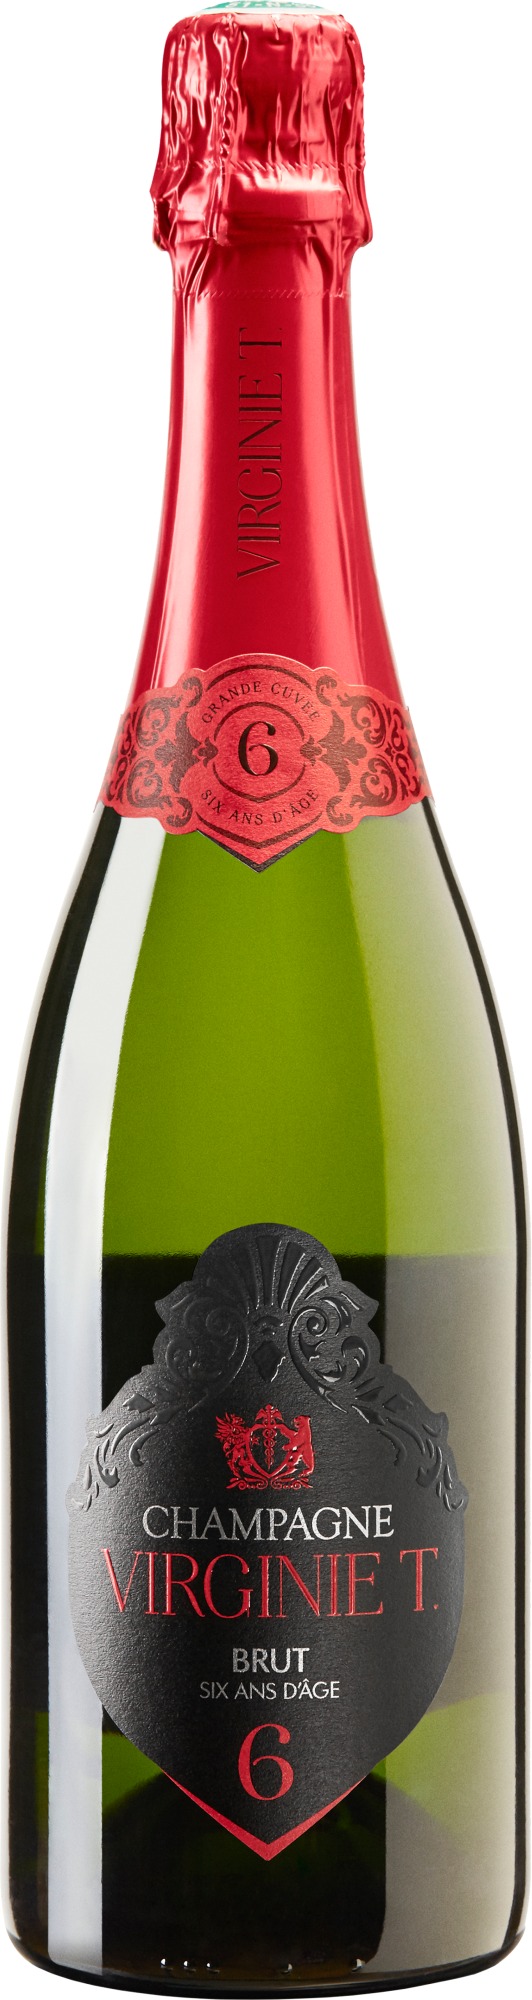 VIRGINIE T. Grande Cuvée Brut 6 ans d'âge Champagne AOC